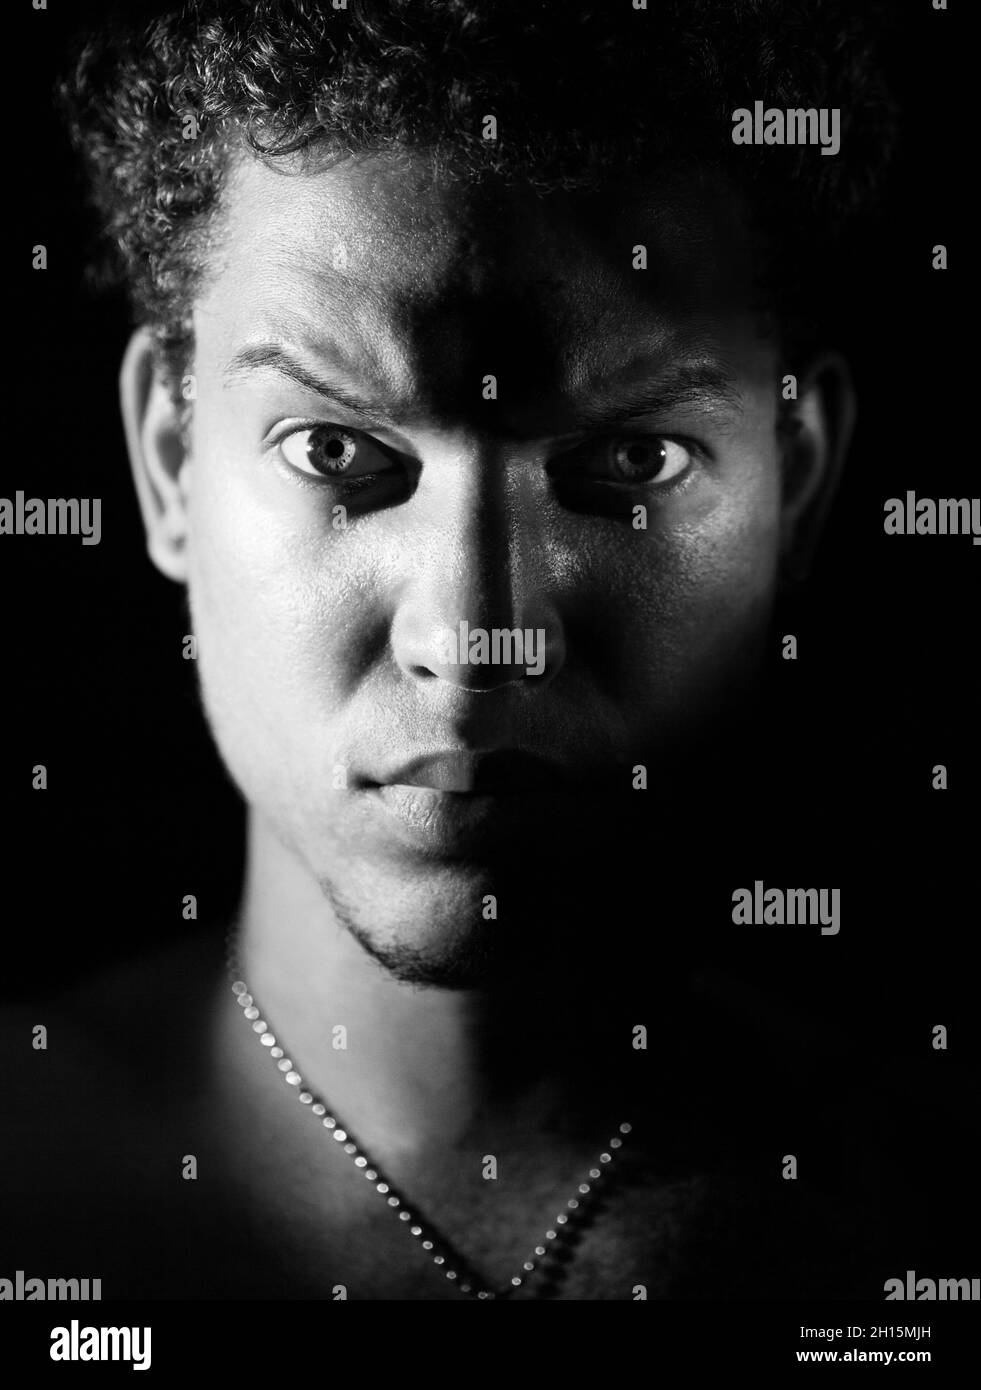 Porträt eines jungen kubaners mit gemischter Rasse und einem harten Look, raues Licht, bw Stockfoto